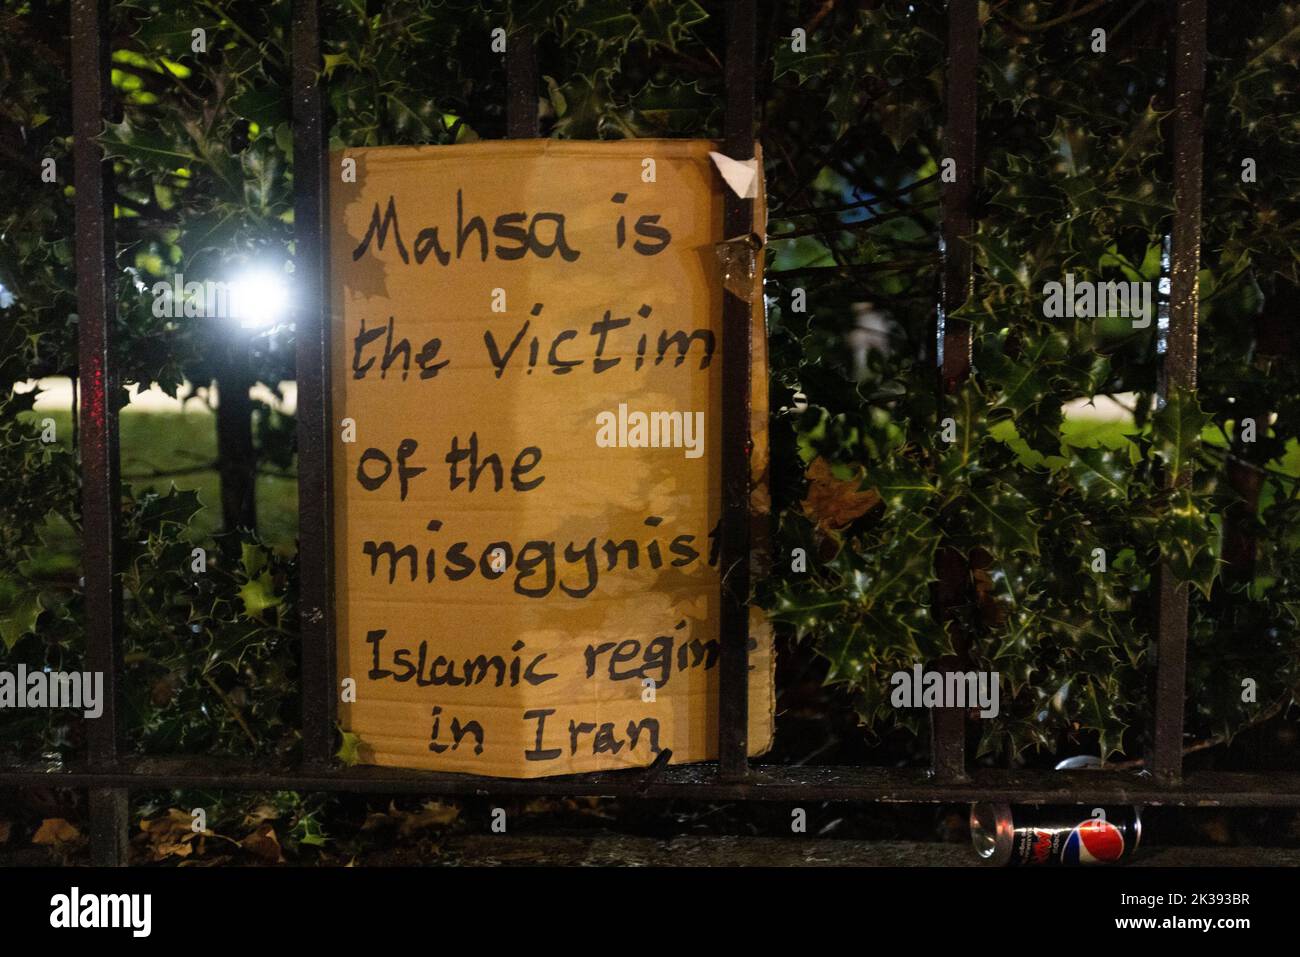 La scène devant l'ambassade iranienne dans le centre de Londres, après que les manifestants se soient affrontés avec la police alors qu'ils appellent à la fin de la République islamique d'Iran. Ils protestaient contre la mort de l'iranienne Mahsa Amini, une femme de 22 ans décédée en Iran alors qu'elle était en garde à vue, qui a été arrêtée par la police morale iranienne pour avoir prétendument violé son code vestimentaire strictement appliqué. Date de la photo: Dimanche 25 septembre 2022. Banque D'Images